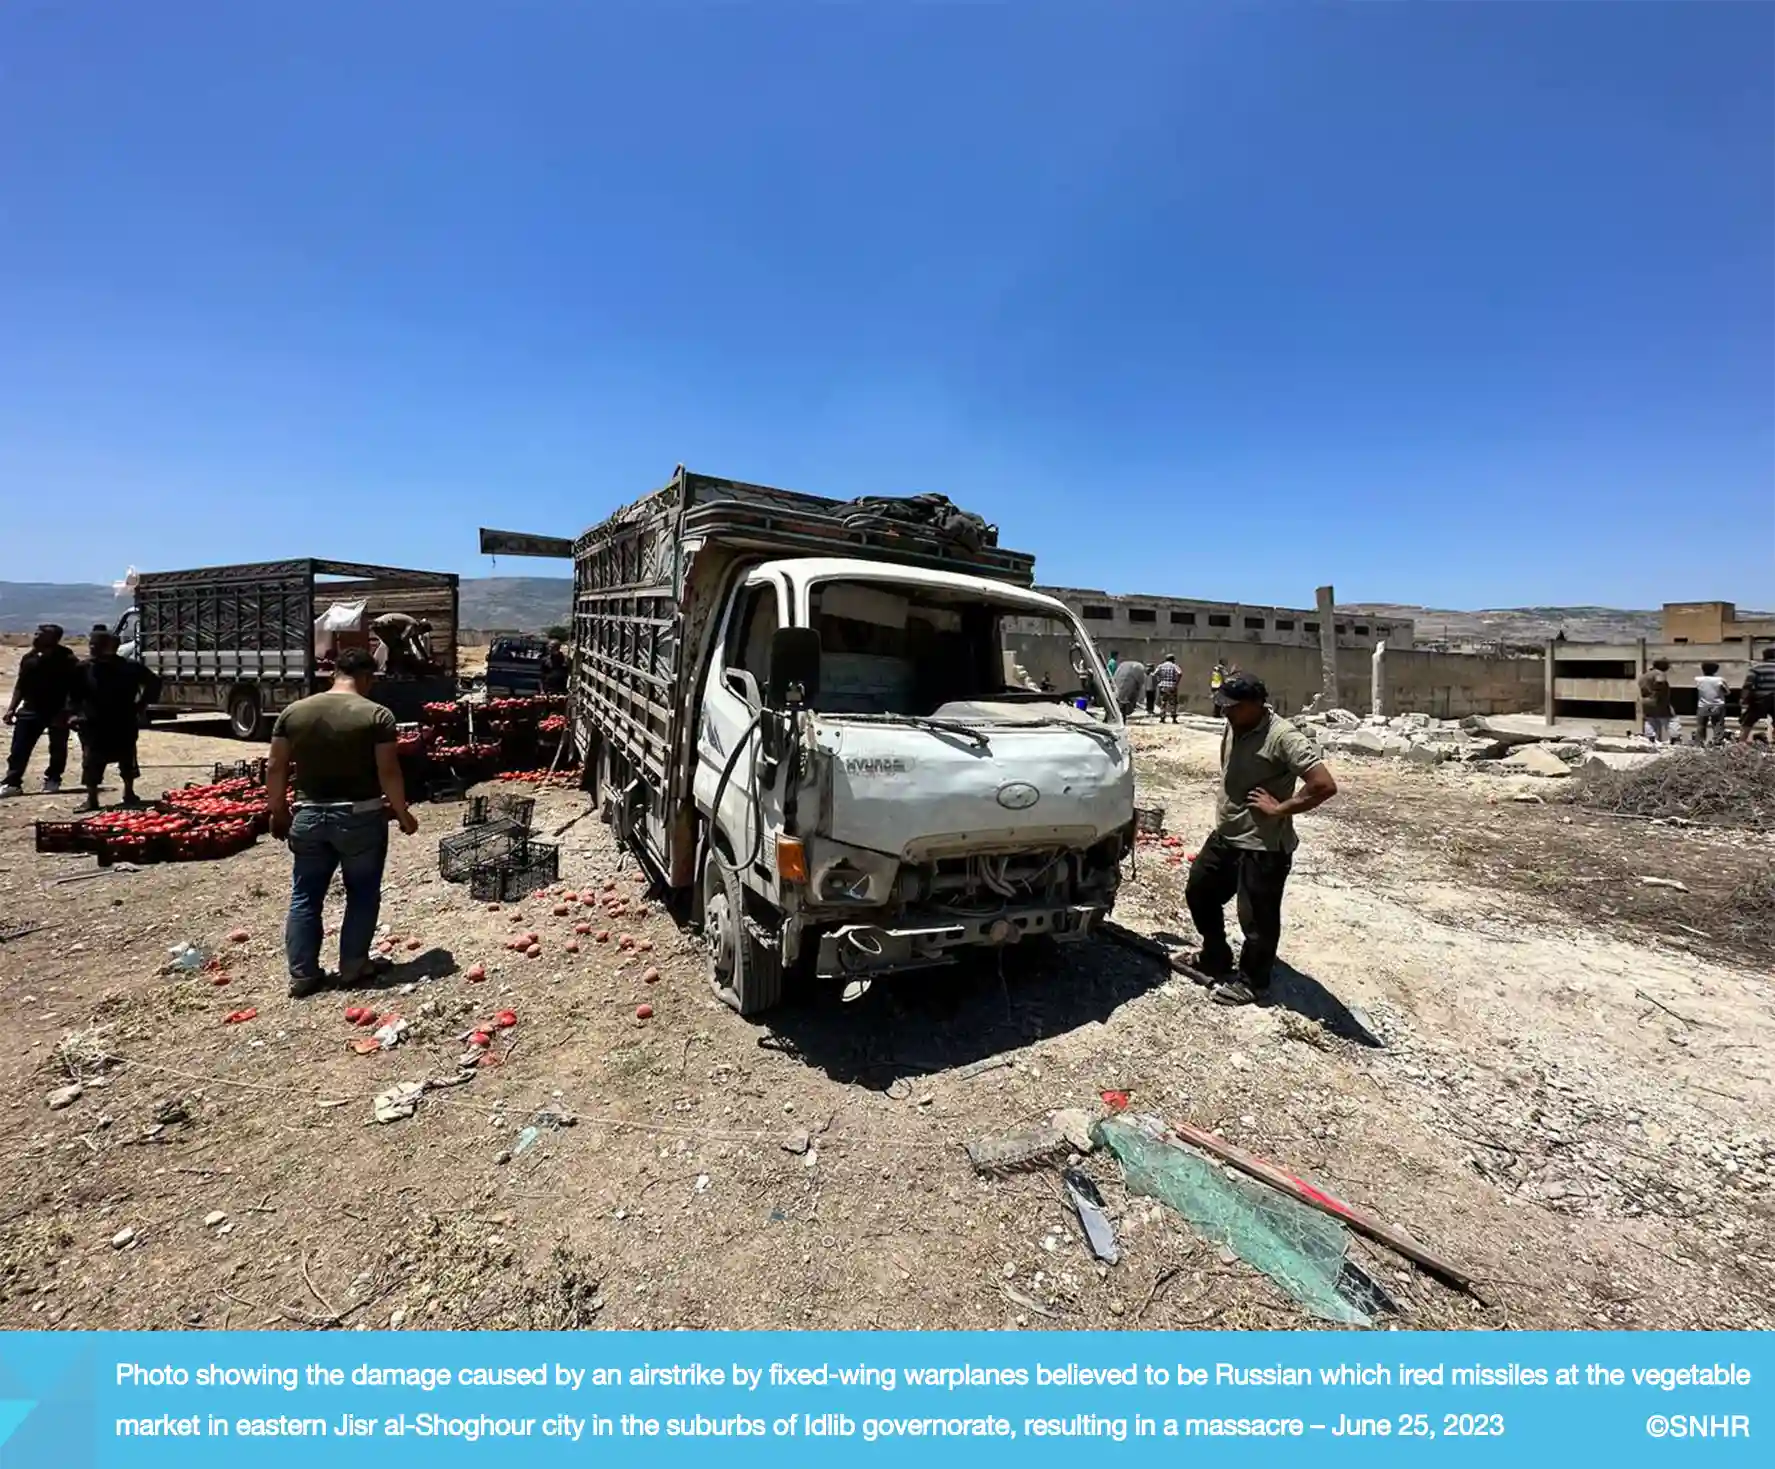 صورة تُظهر أضراراً إثر قصف طيران ثابت الجناح نعتقد أنه روسي بالصواريخ سوق الخضراوات شرقي مدينة جسر الشغور بريف محافظة إدلب، ما تسبب بمجزرة، في 25-6-2023